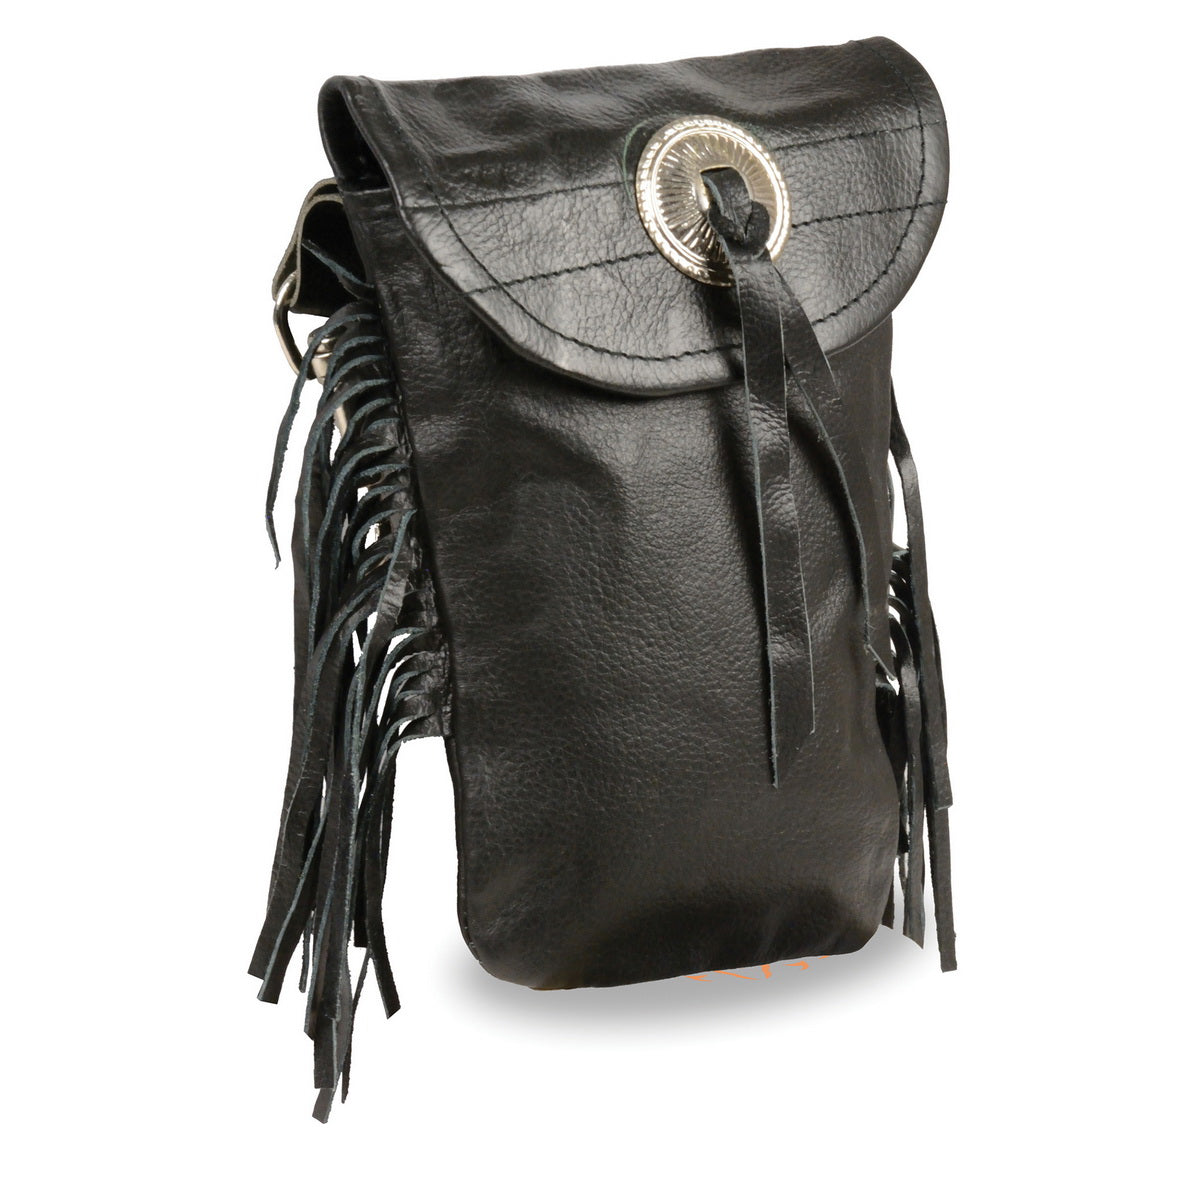 Milwaukee Leather SH506F Unisex Black Leather Belt Bag with Fringe and Concho